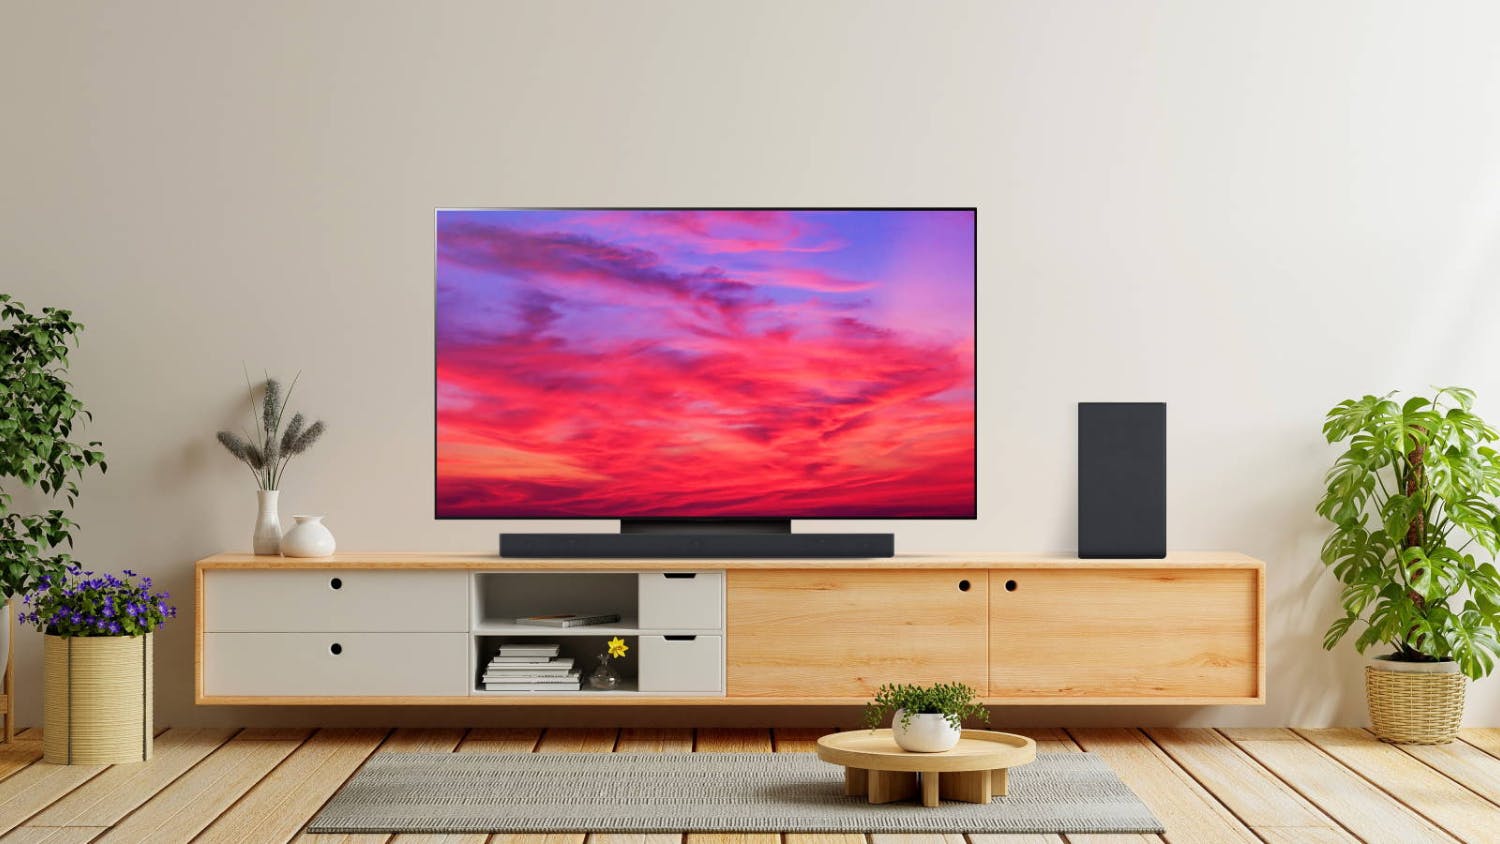 LG 55" C4 Smart 4K OLED evo TV (2024)